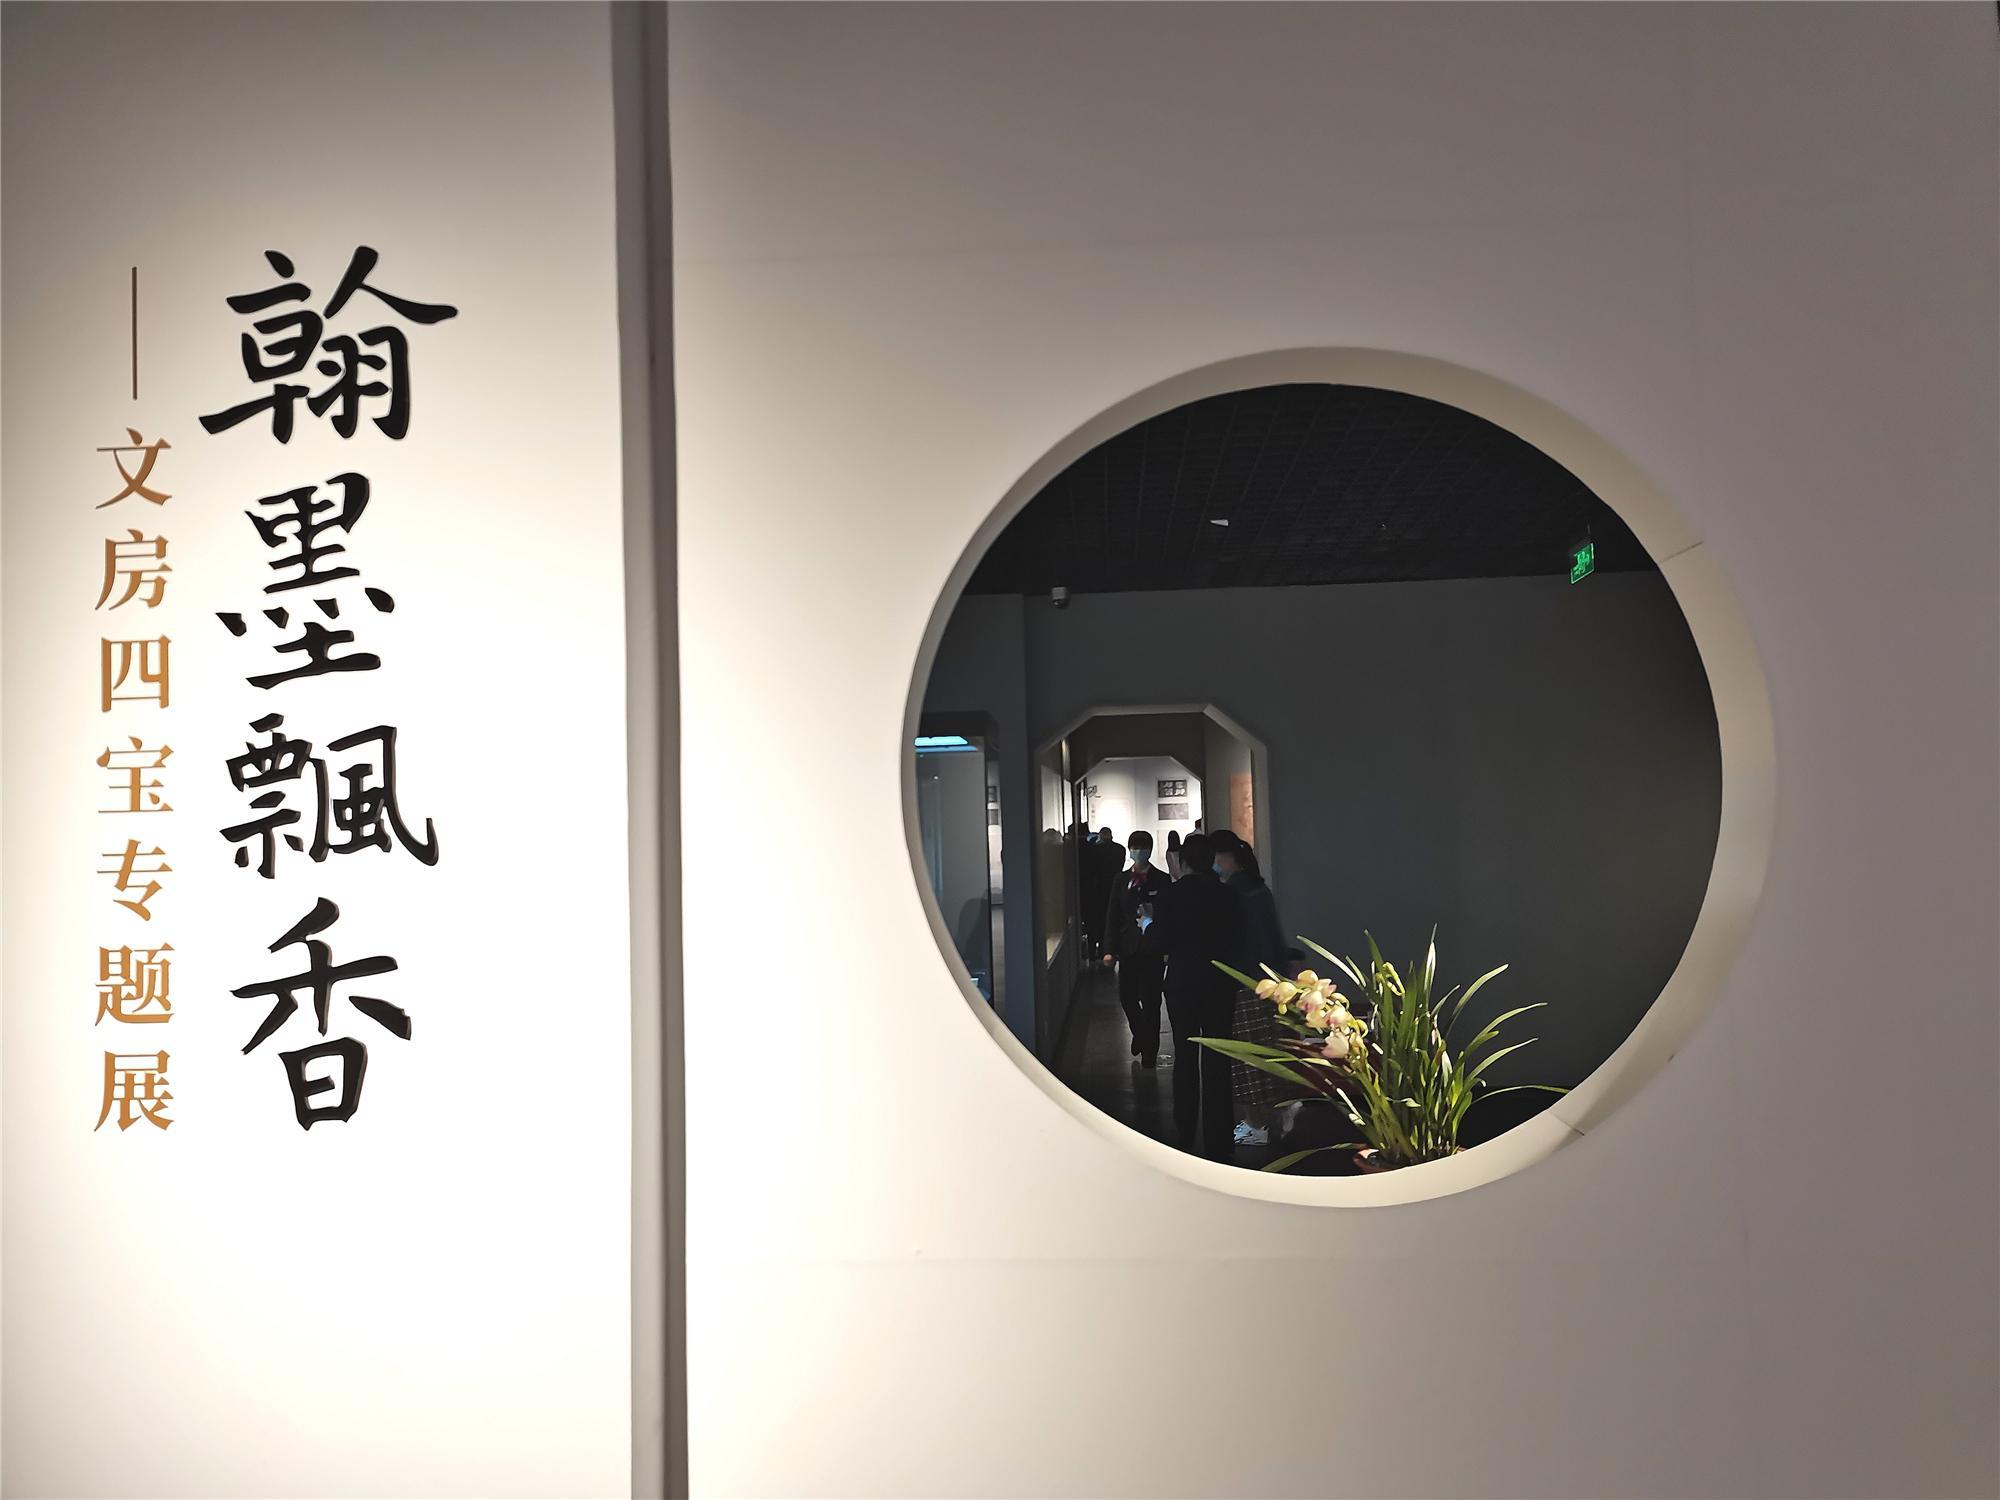 【雲上嶺南】A exposição Quatro Tesouros do Estudo abre no museu Nanyue King 文房四宝专题展在南越王博物馆开幕